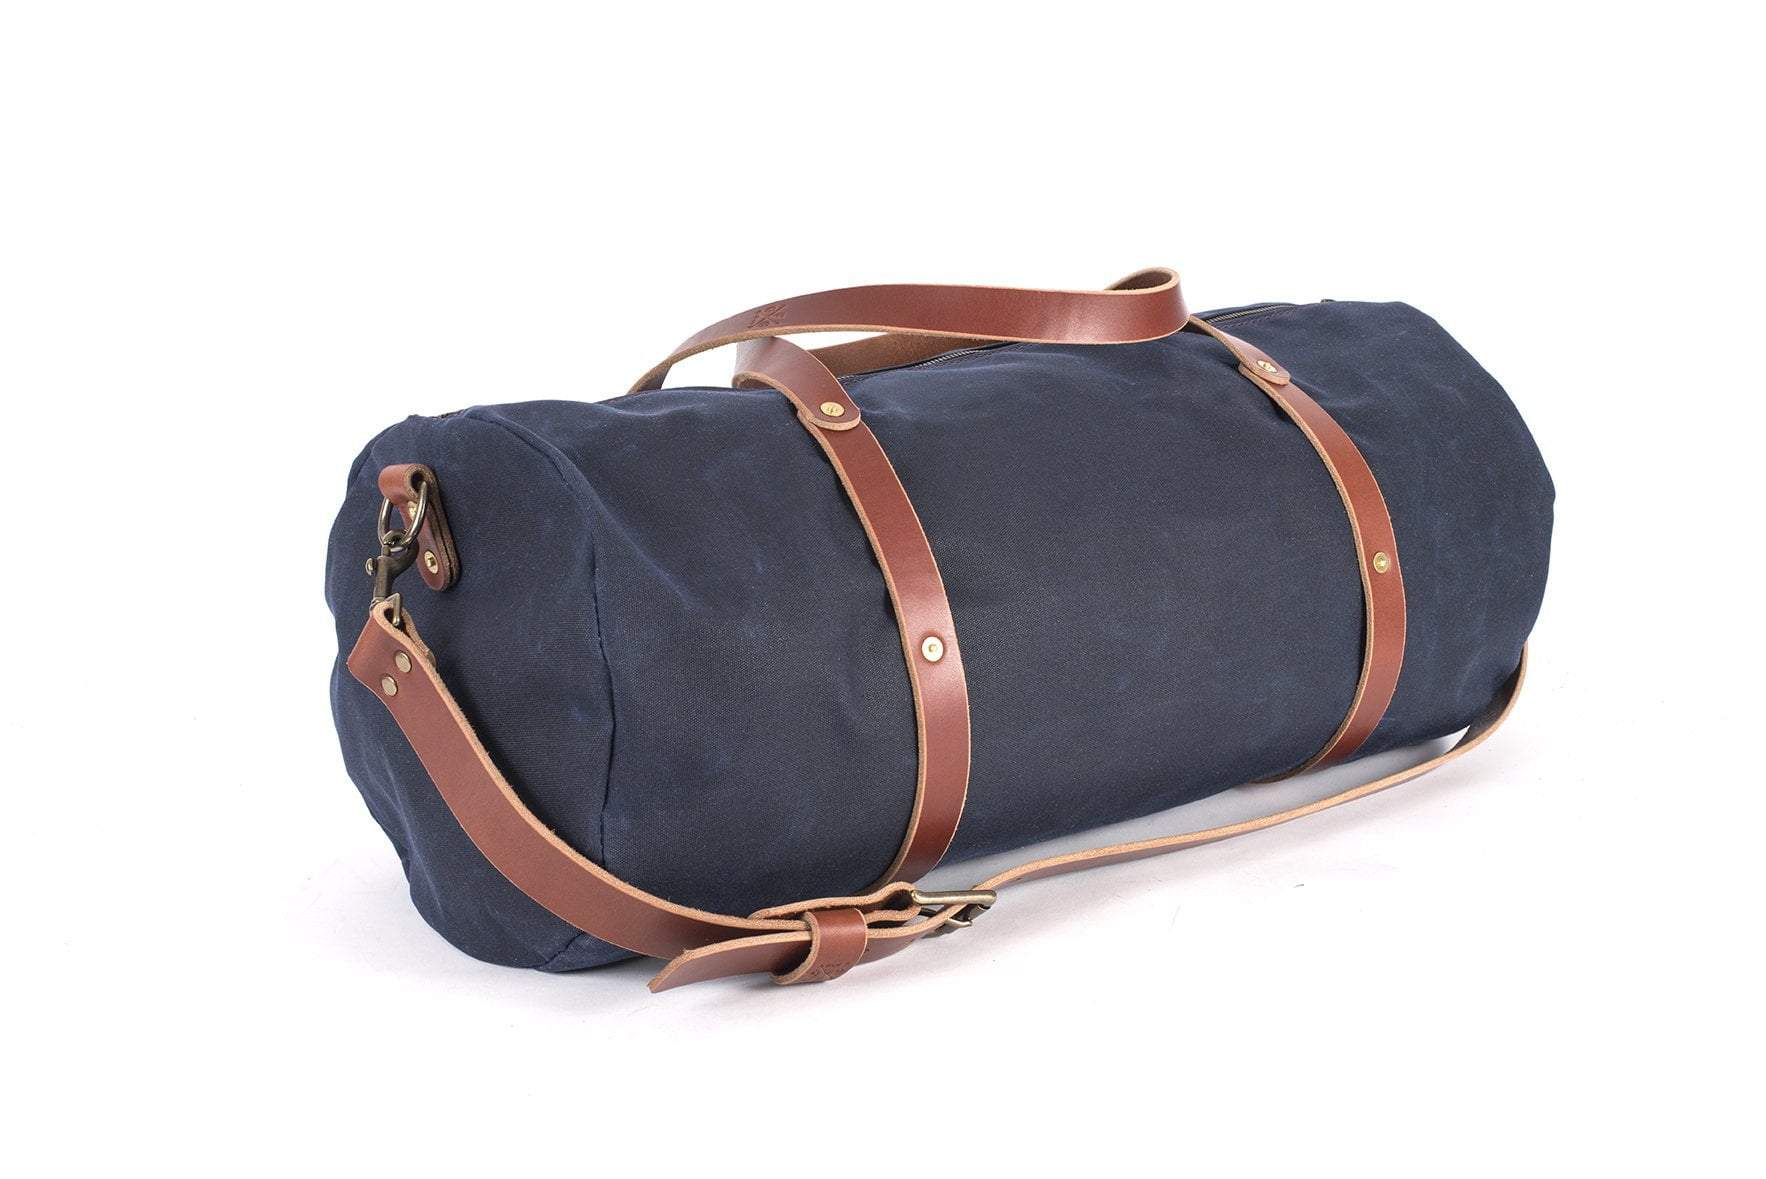 No. 12 Weekender Bag - Handmade Leather Duffle Bag